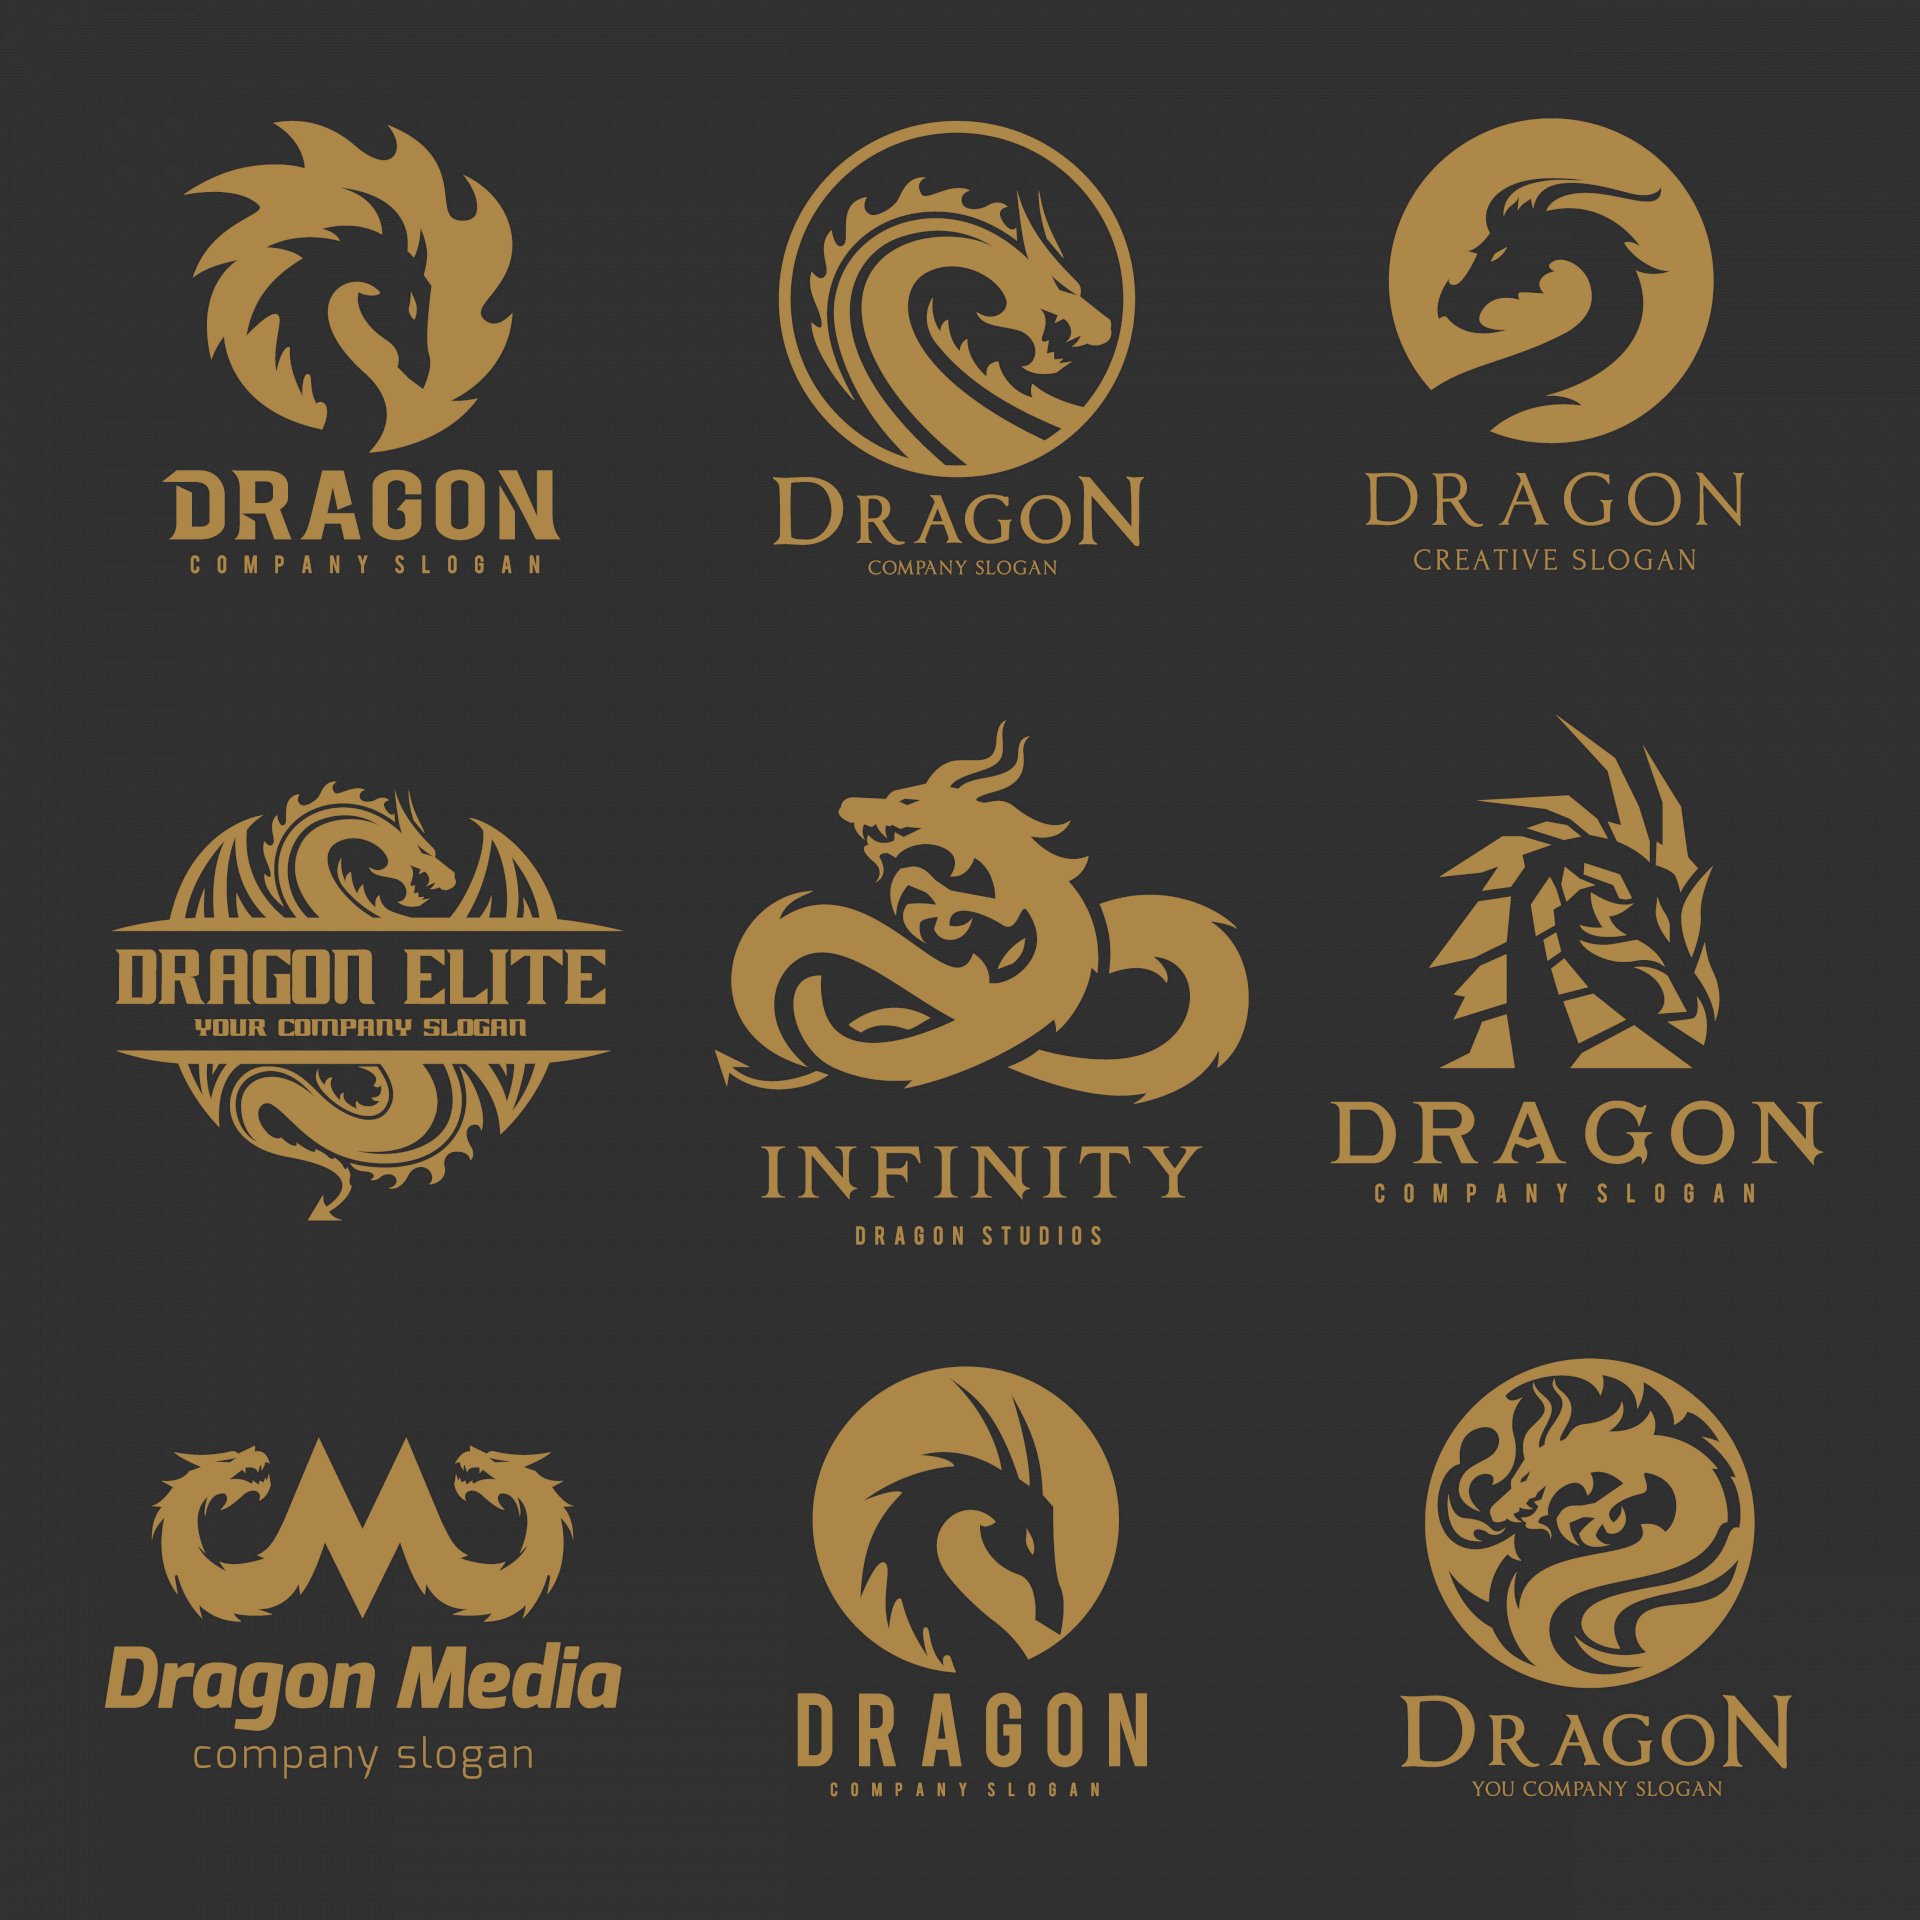 Công ty nào sử dụng logo rồng vàng trong thương hiệu của mình?